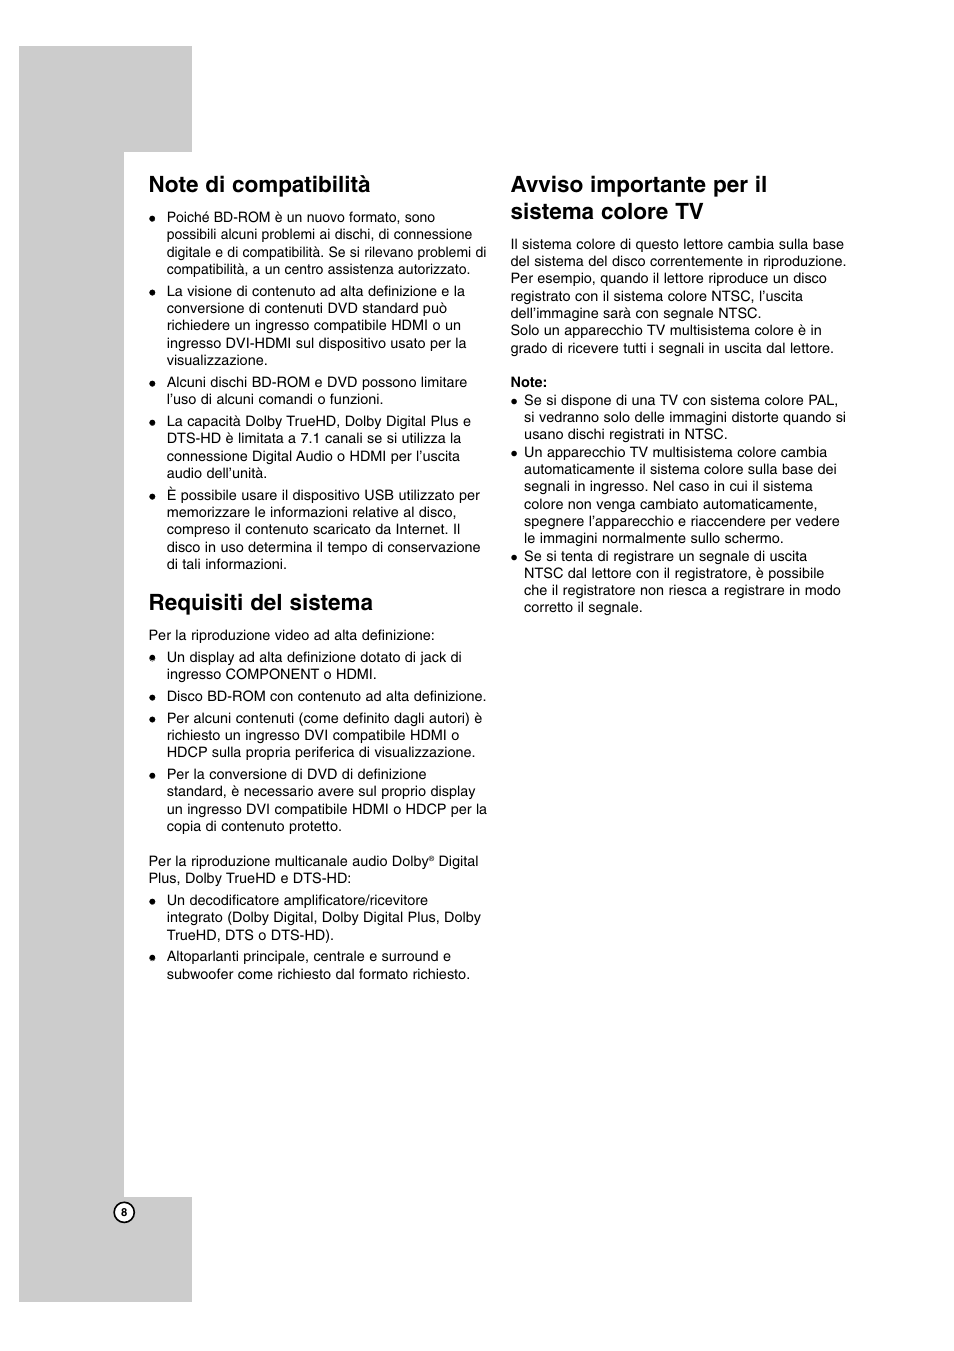 Requisiti del sistema, Avviso importante per il sistema colore tv | LG BD300 Manuale d'uso | Pagina 8 / 40